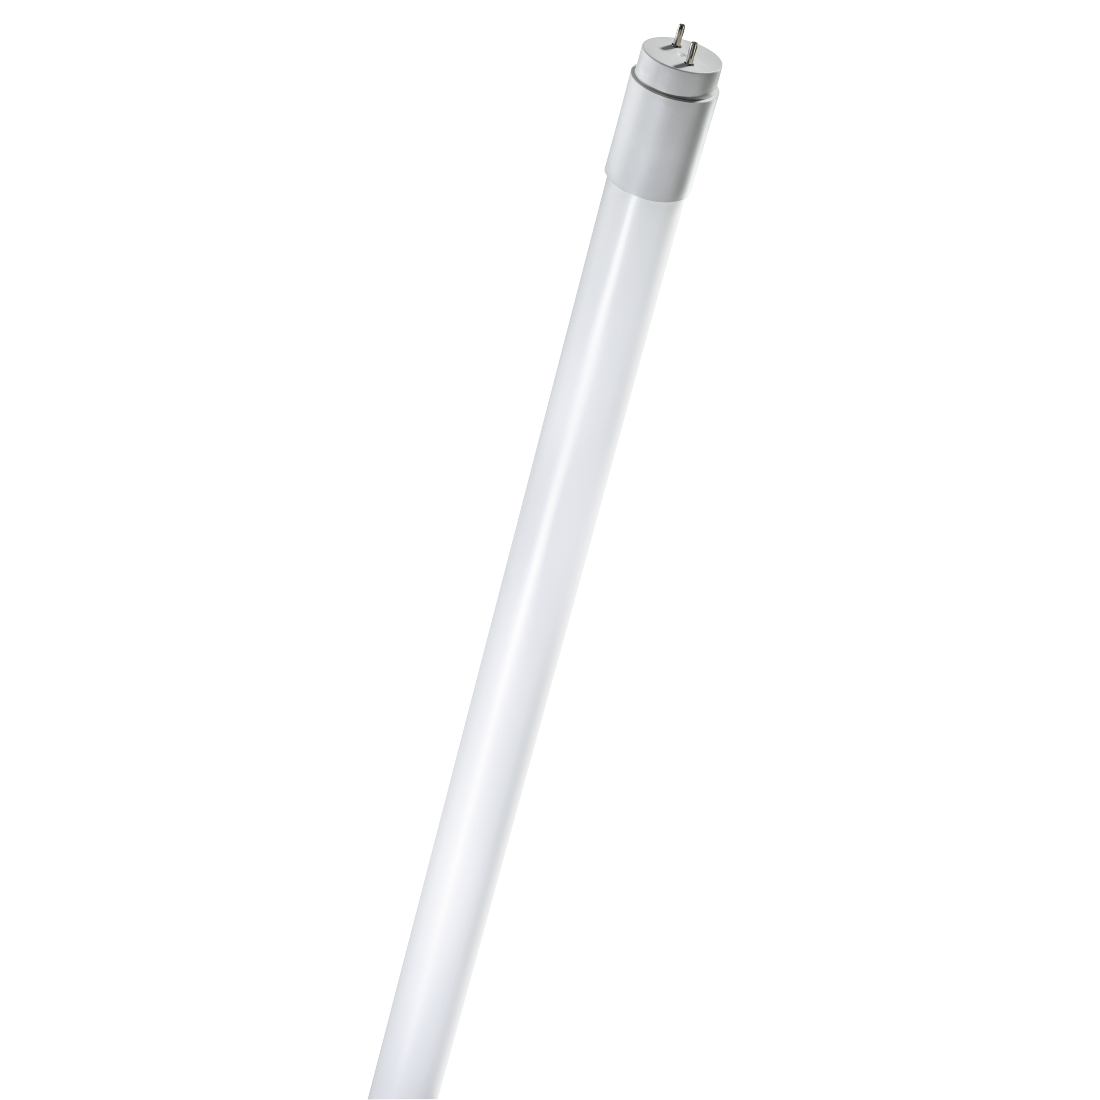 abx Druckfähige Abbildung - Xavax, LED-Lampe, G13, 2160lm ersetzt 36W, Röhrenlampe T8, 120cm, Tageslicht, Glas